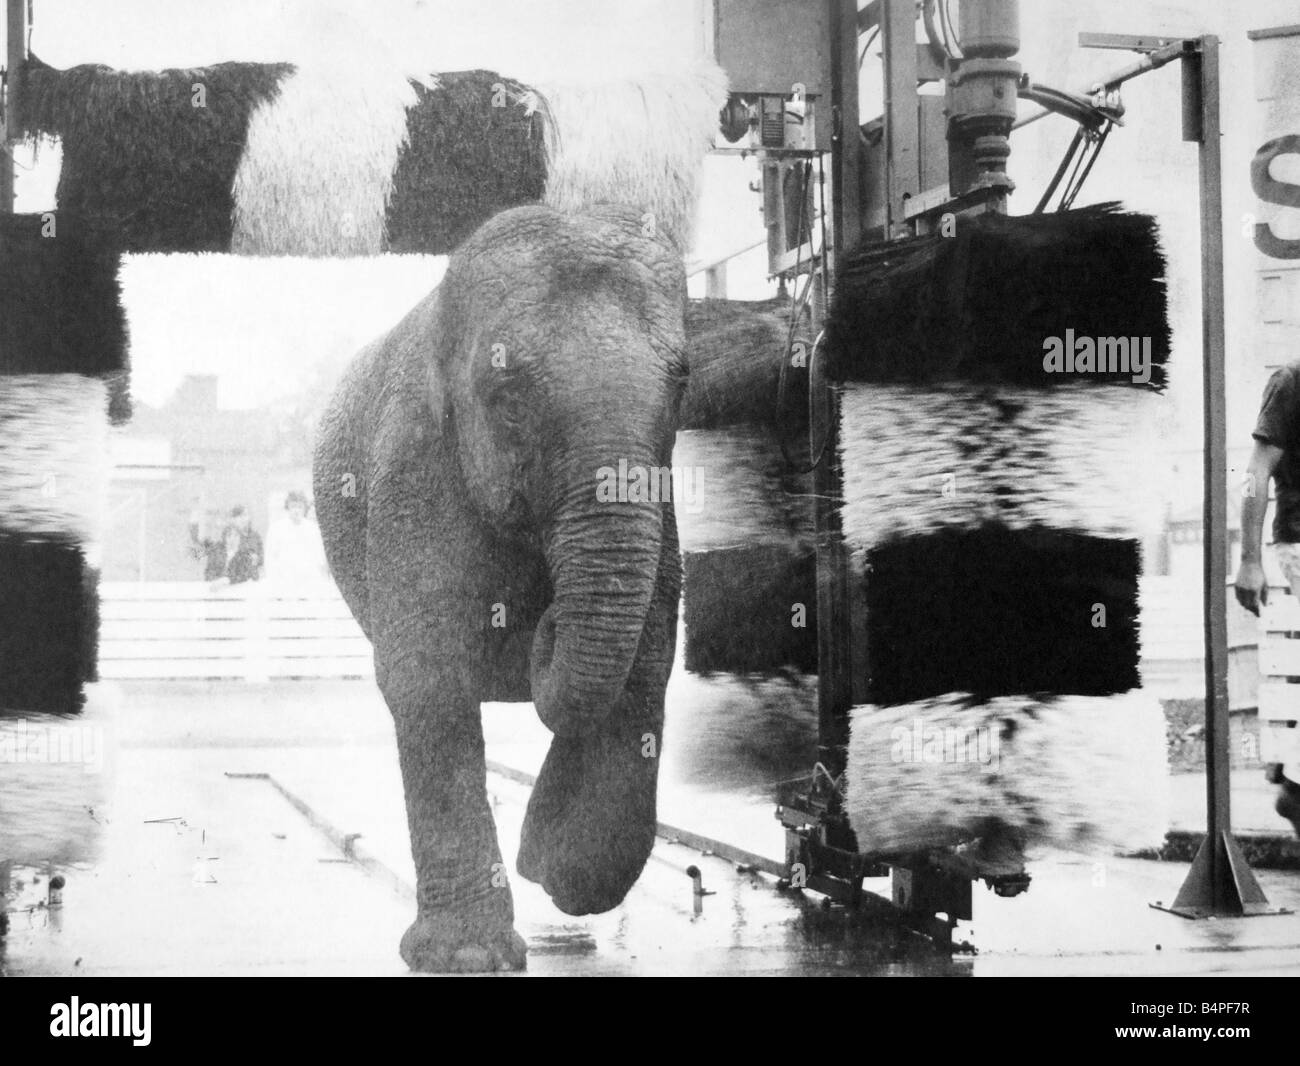 Walsall Football Club s car wash se convirtió en un Jumbo por un tiempo hoy Gilda un elefante del circo de 2 años tomó un baño en el panda car wash en la explanada de la estación de llenado de estacionamiento Becarios 1970 Foto de stock